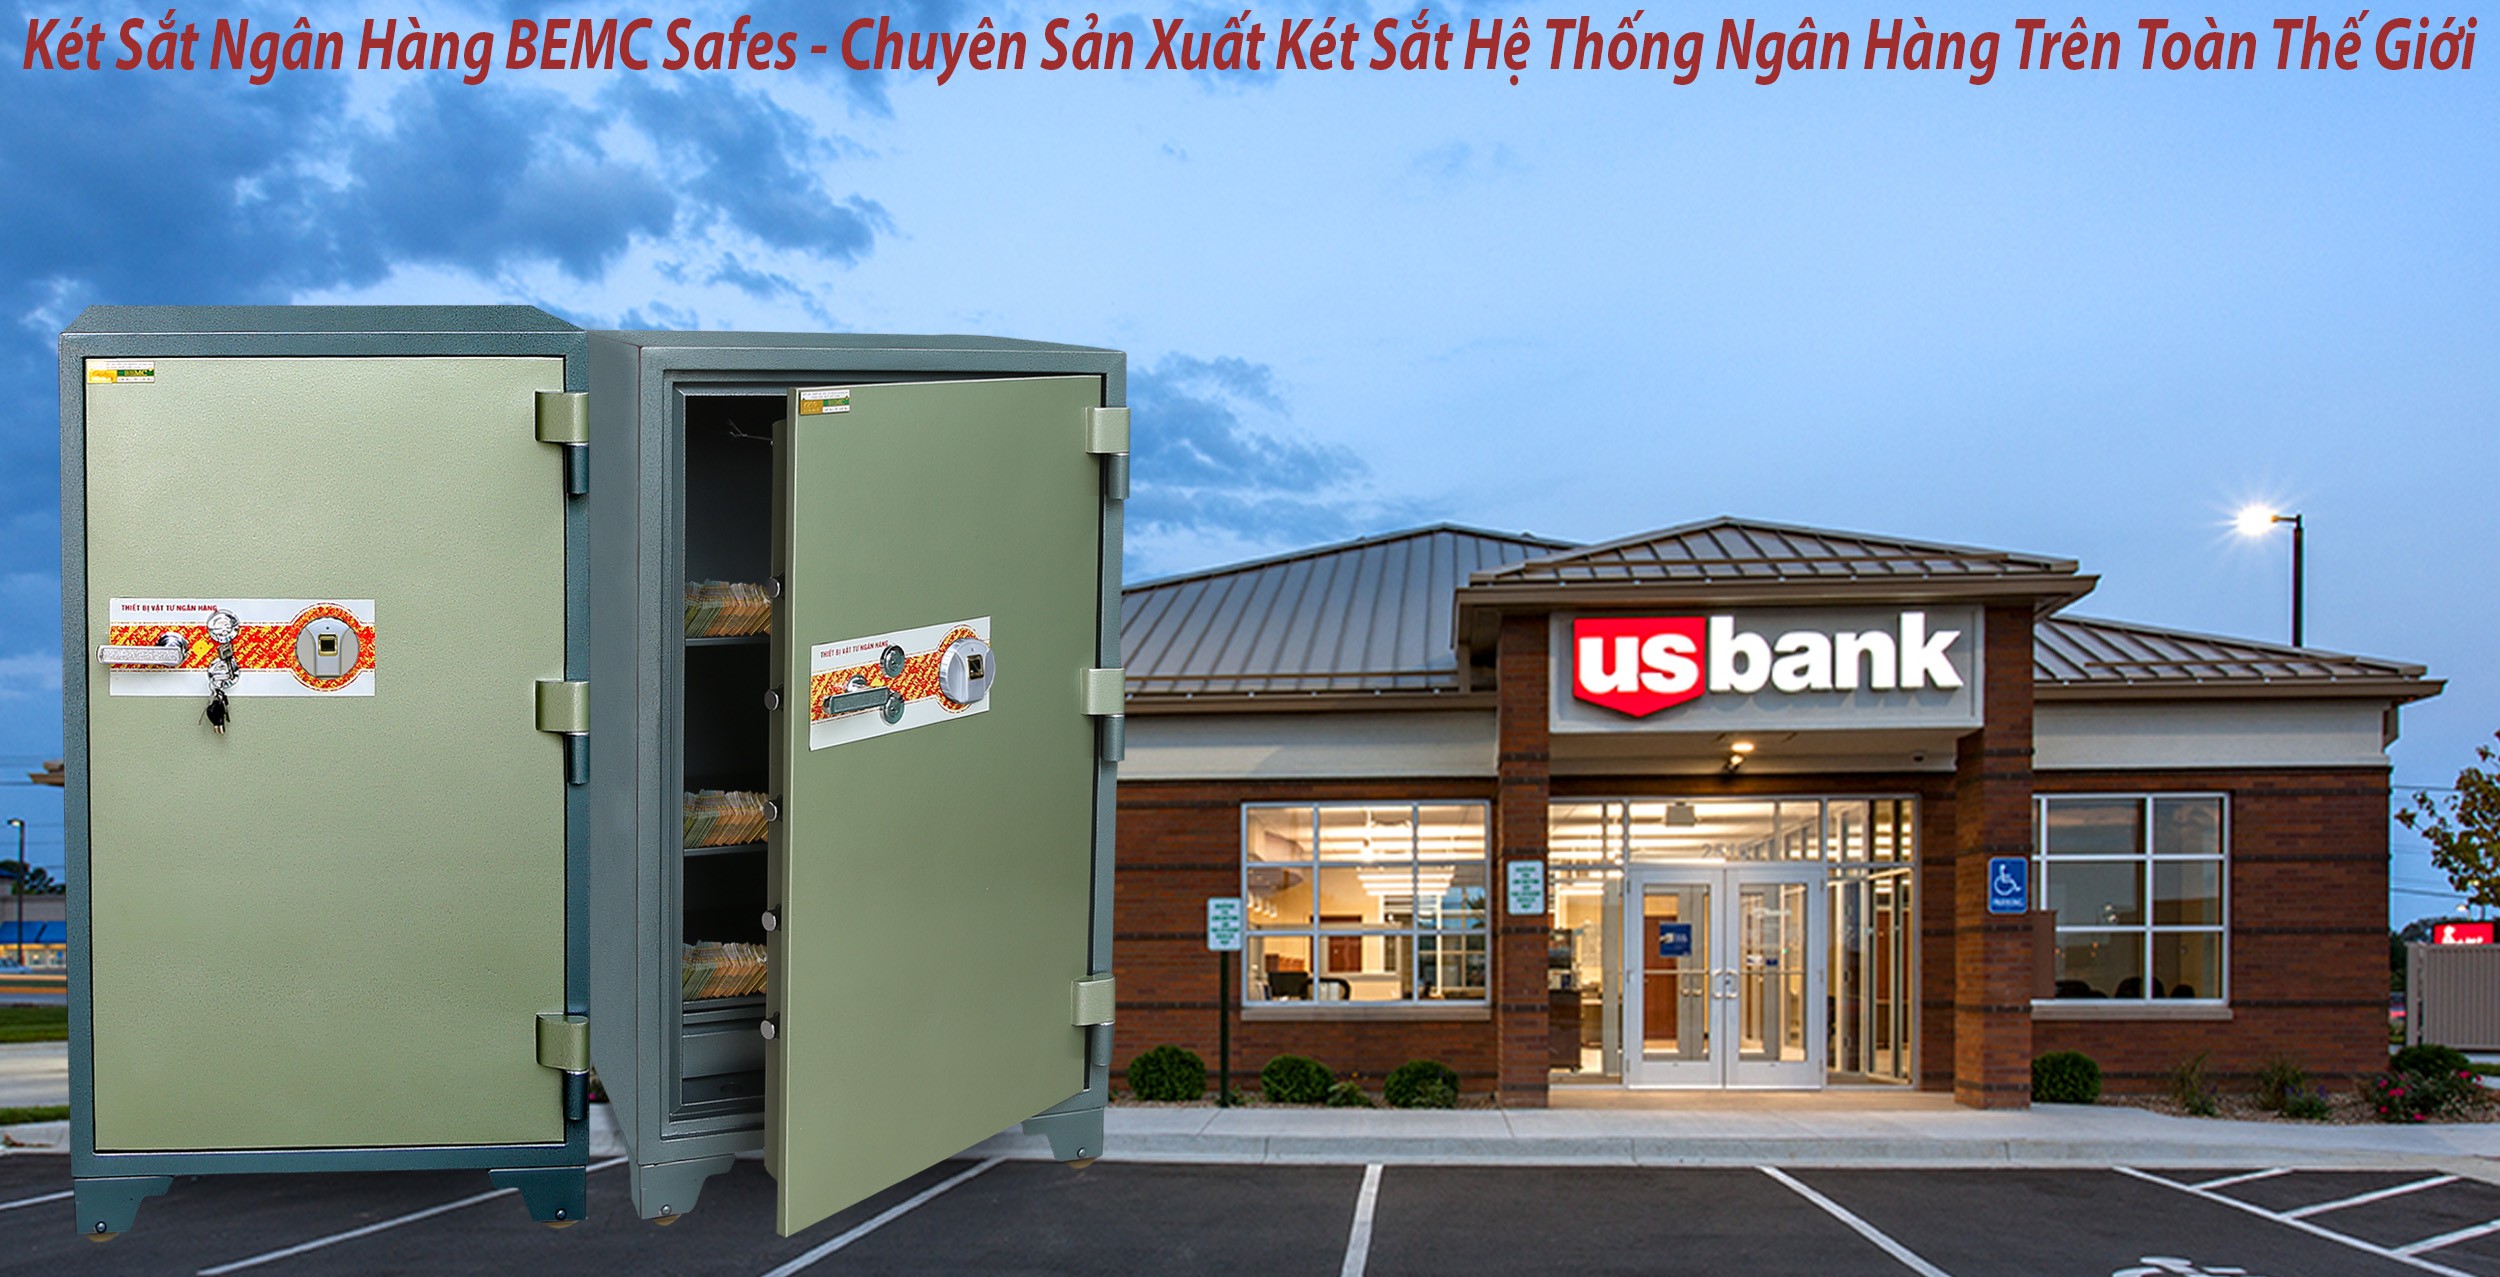 hình ảnh sản phẩm dịch vụ két sắt ngân hàng tại hcm